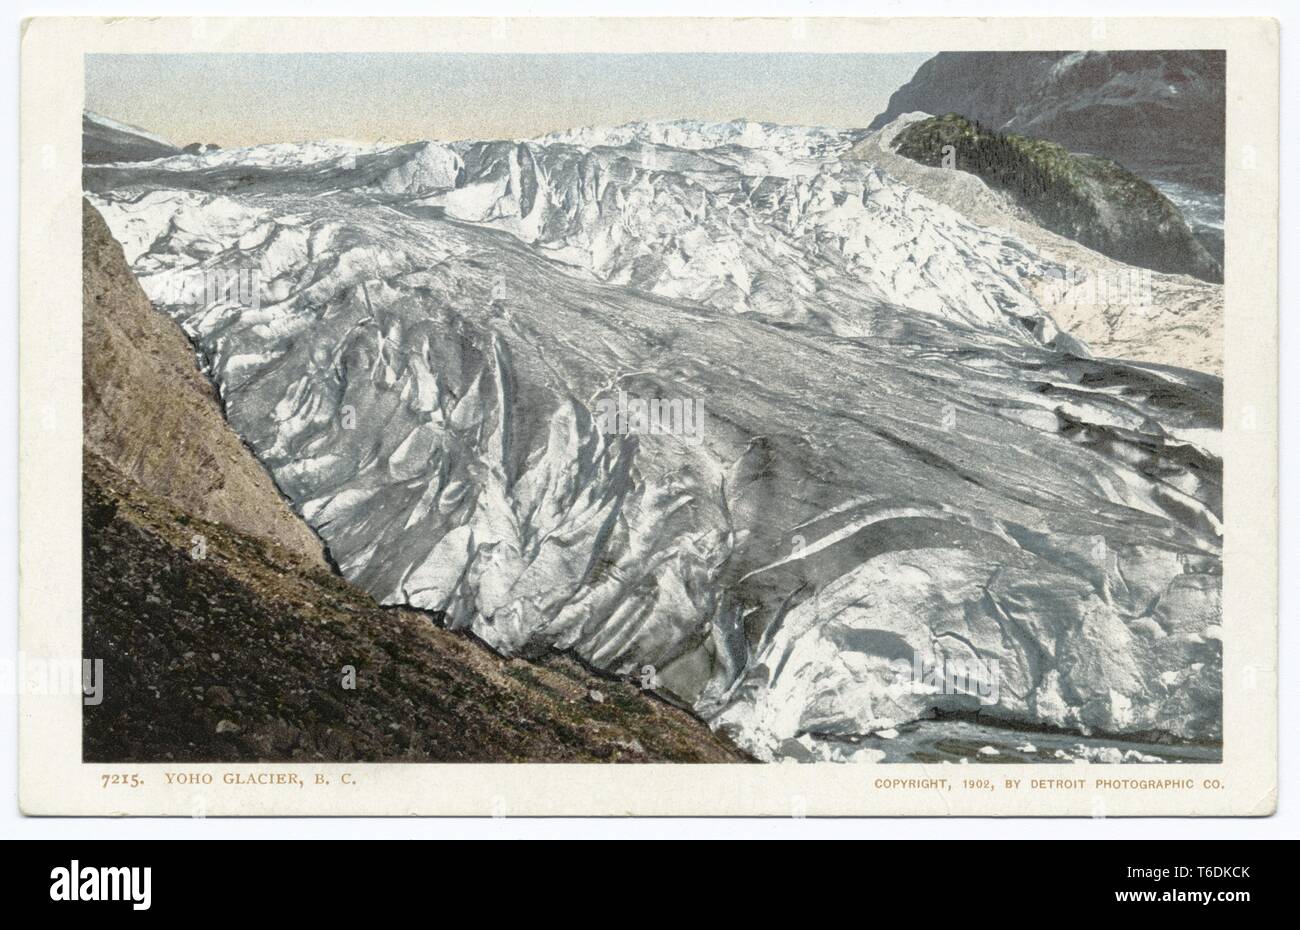 Detroit Publishing Company vintage postcard reproduction du glacier Yoho en Colombie-Britannique, Canada, 1902. À partir de la Bibliothèque publique de New York. () Banque D'Images